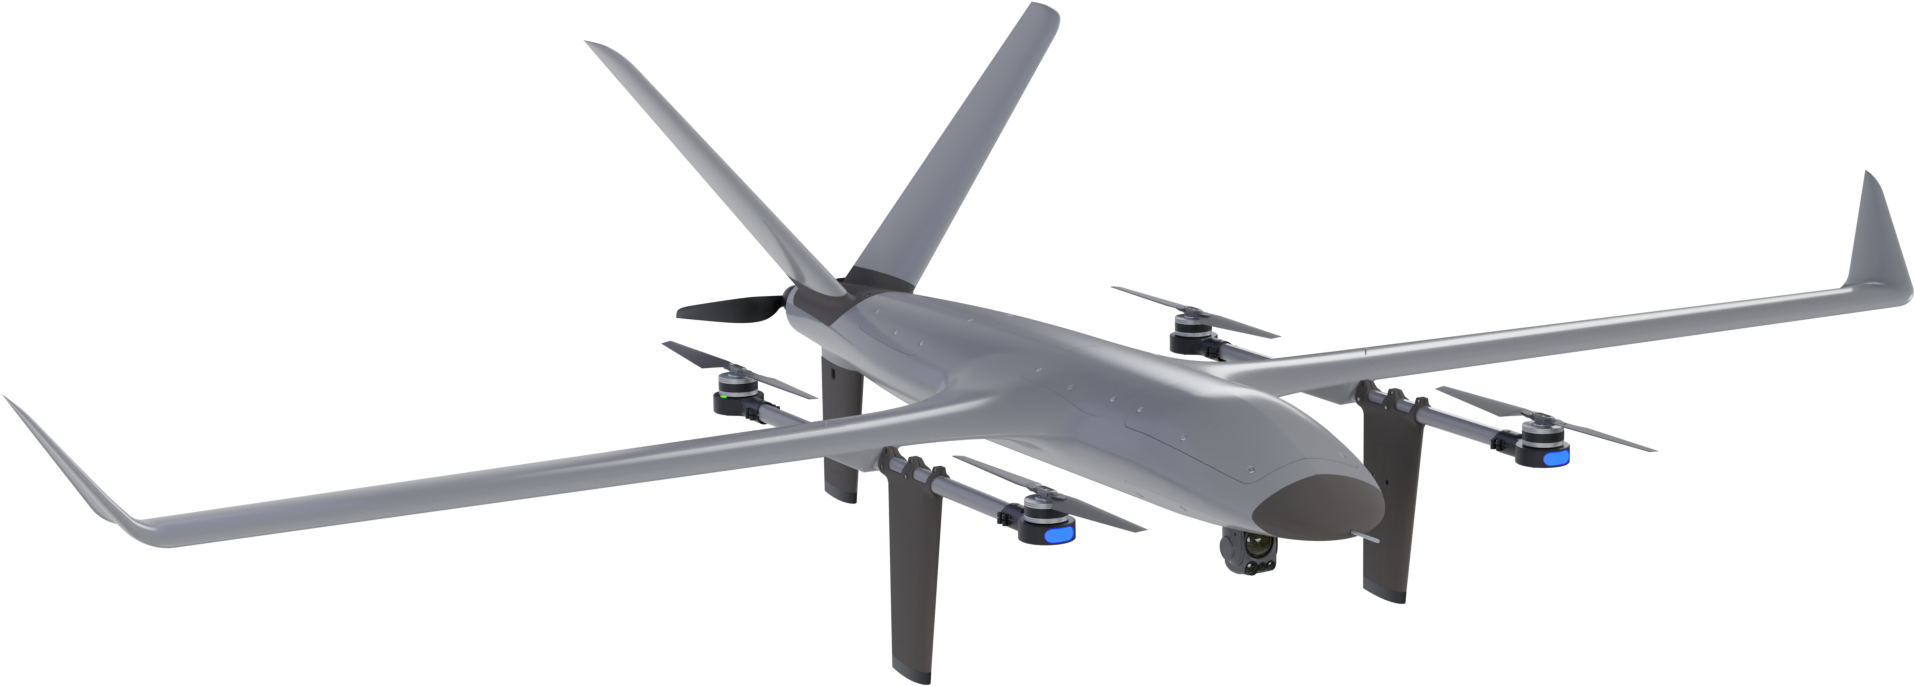 VTOne VTOL de largo alcance del fabricante portugués de drones